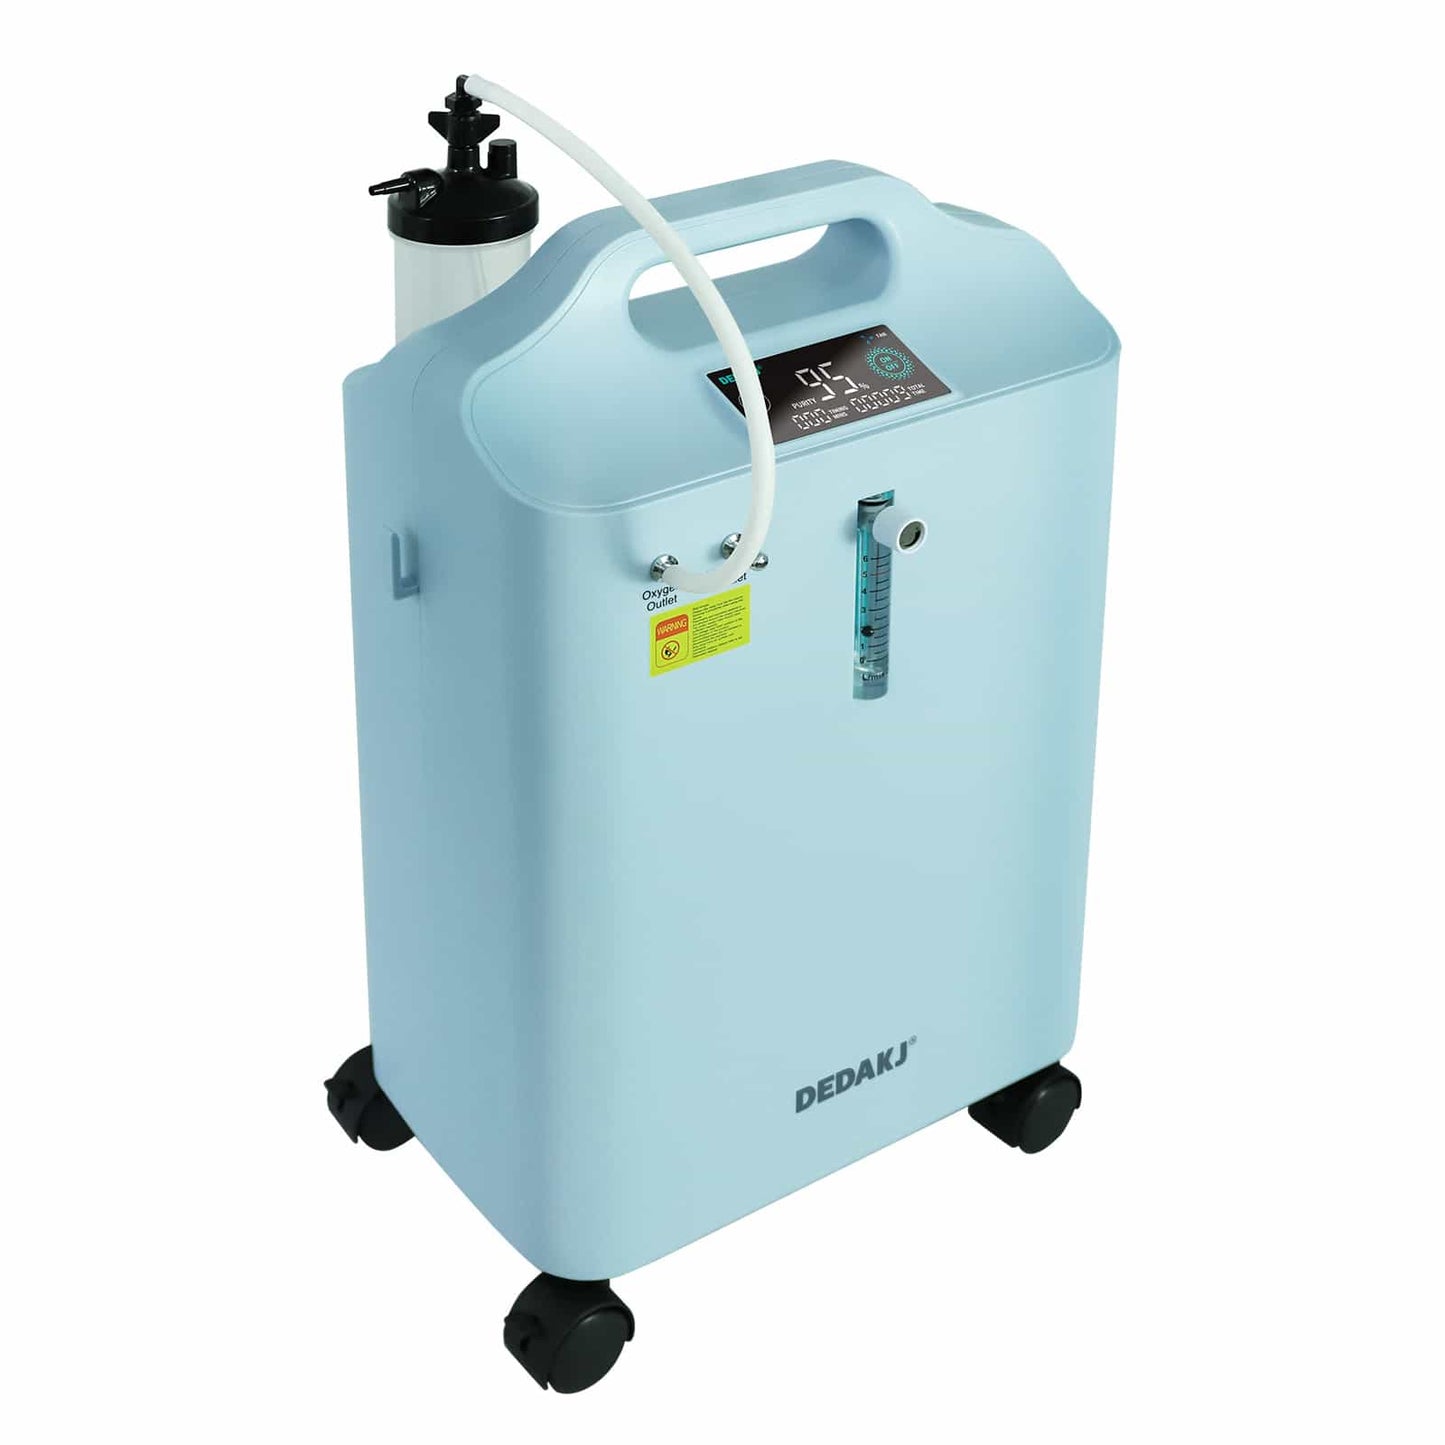 DEDAKJ 1-5 litros 95% médico estándar concentrador de oxígeno Theraphy de oxígeno en casa con función de nebulizador 110V/220V DE-Y5AW